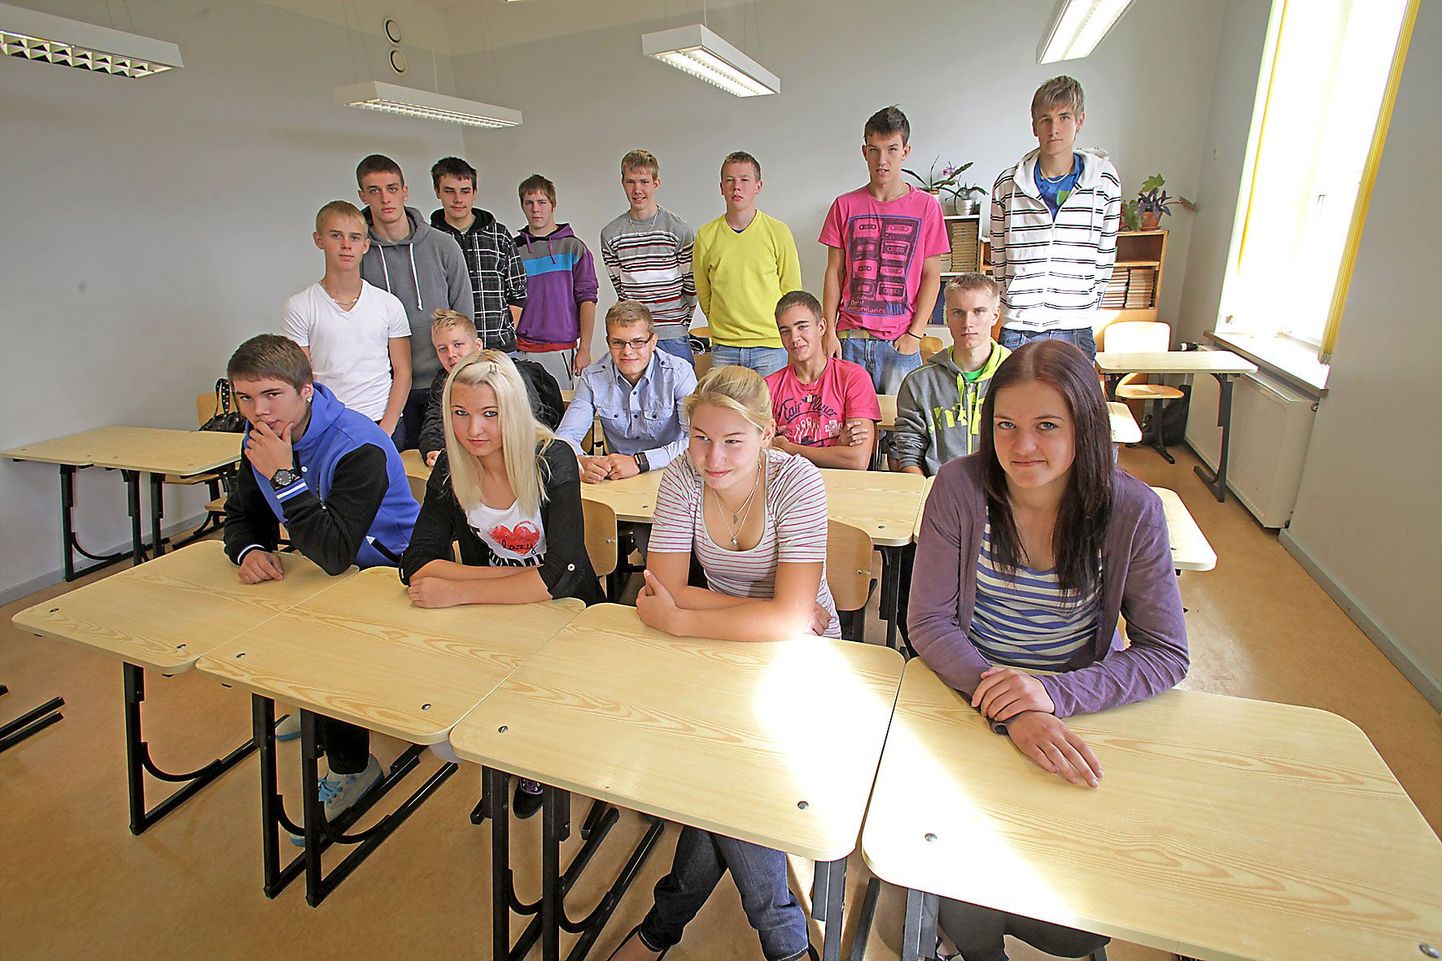 Lähte gümnaasiumi vastavatud spordiklassi õpilased on tulnud kokku üle Eesti. Tavapärast kehalist kasvatust neil pole, kuid see-eest tuleb iga päev käia trennis. Esimese õppenädala järel oli noortel kooli kohta öelda vaid kiidusõnu.